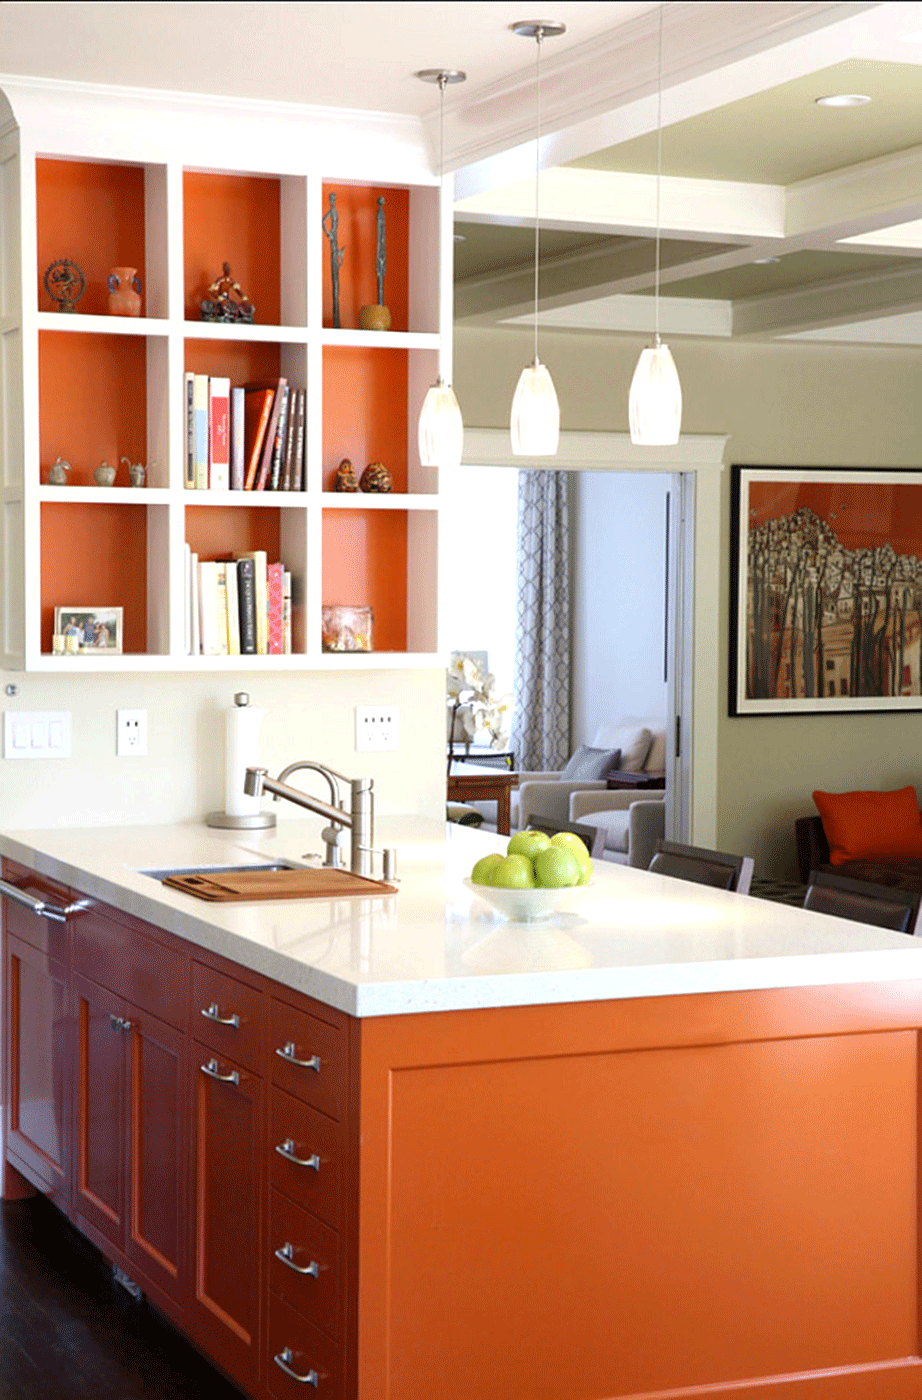 Βάψτε τα ντουλάπια τις κουζίνας με το πιο φθινοπωρινό χρώμα. 